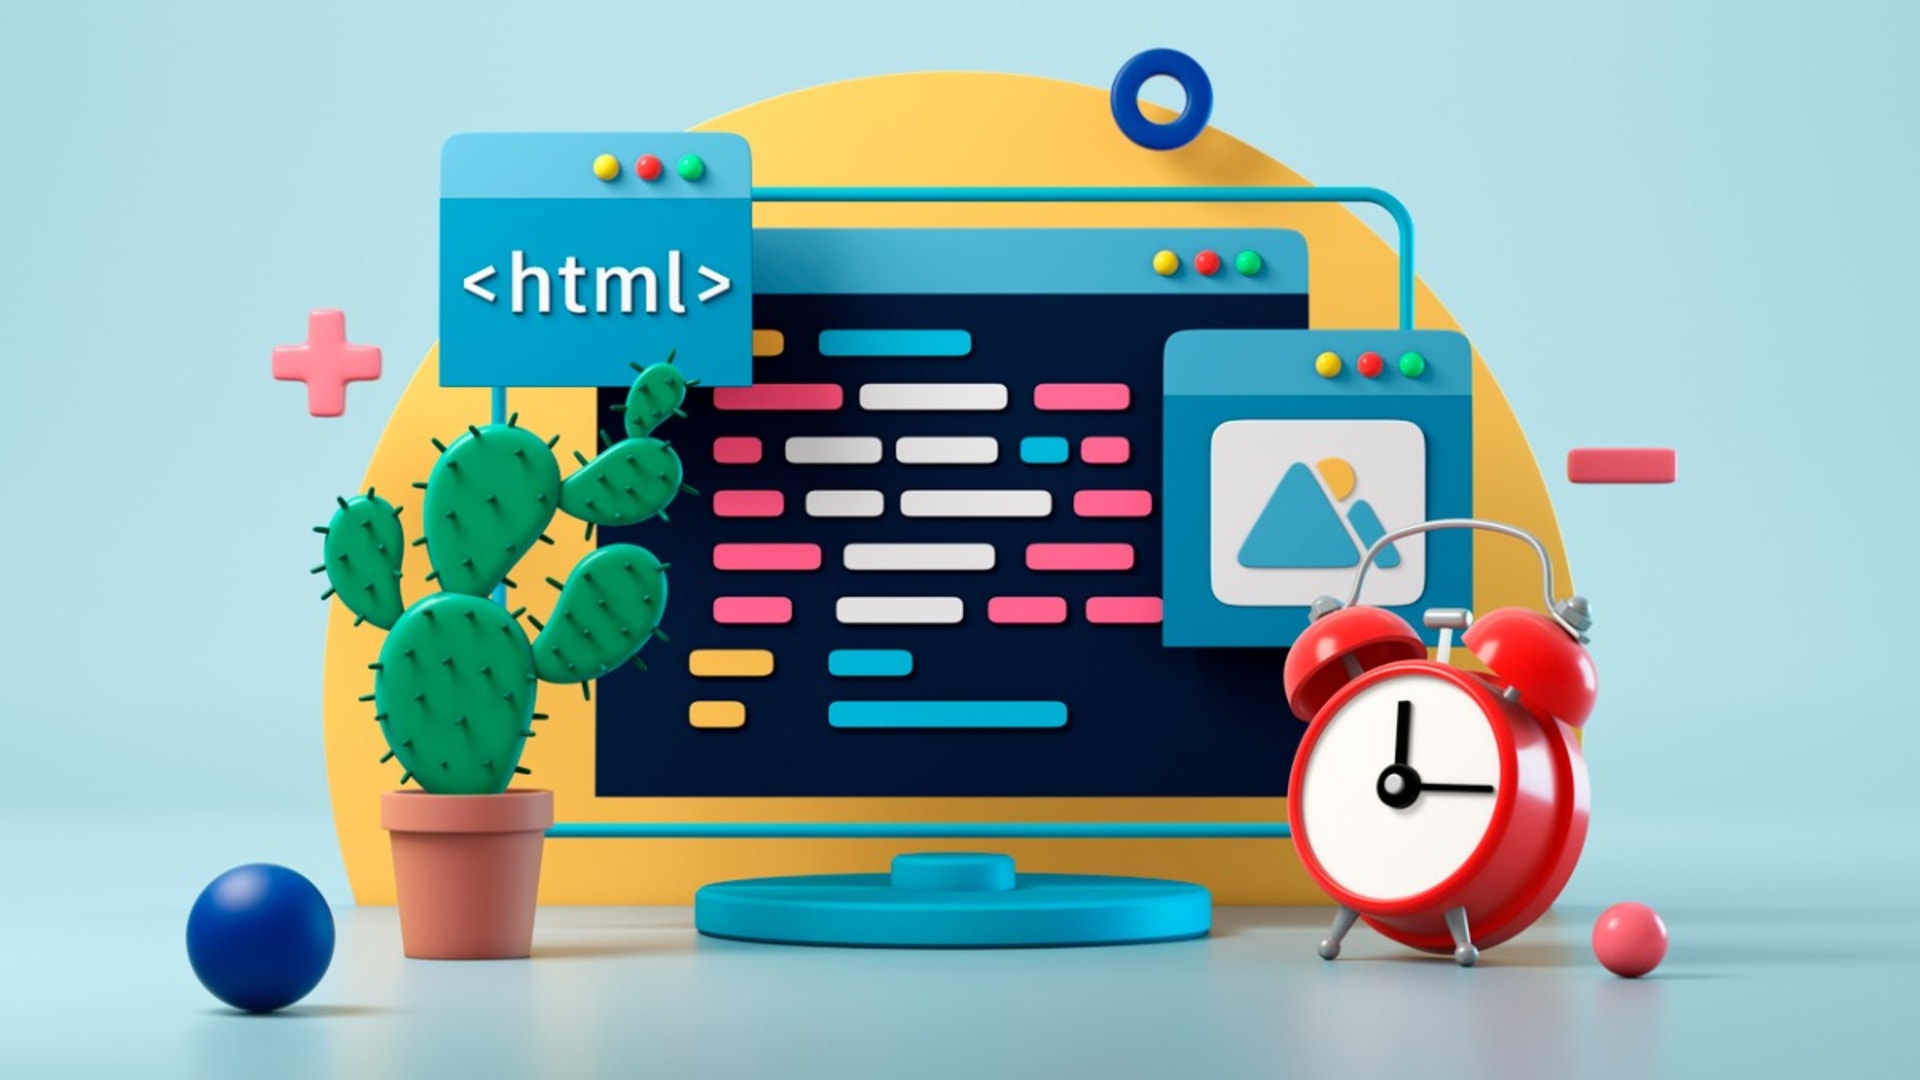 HTML Developer